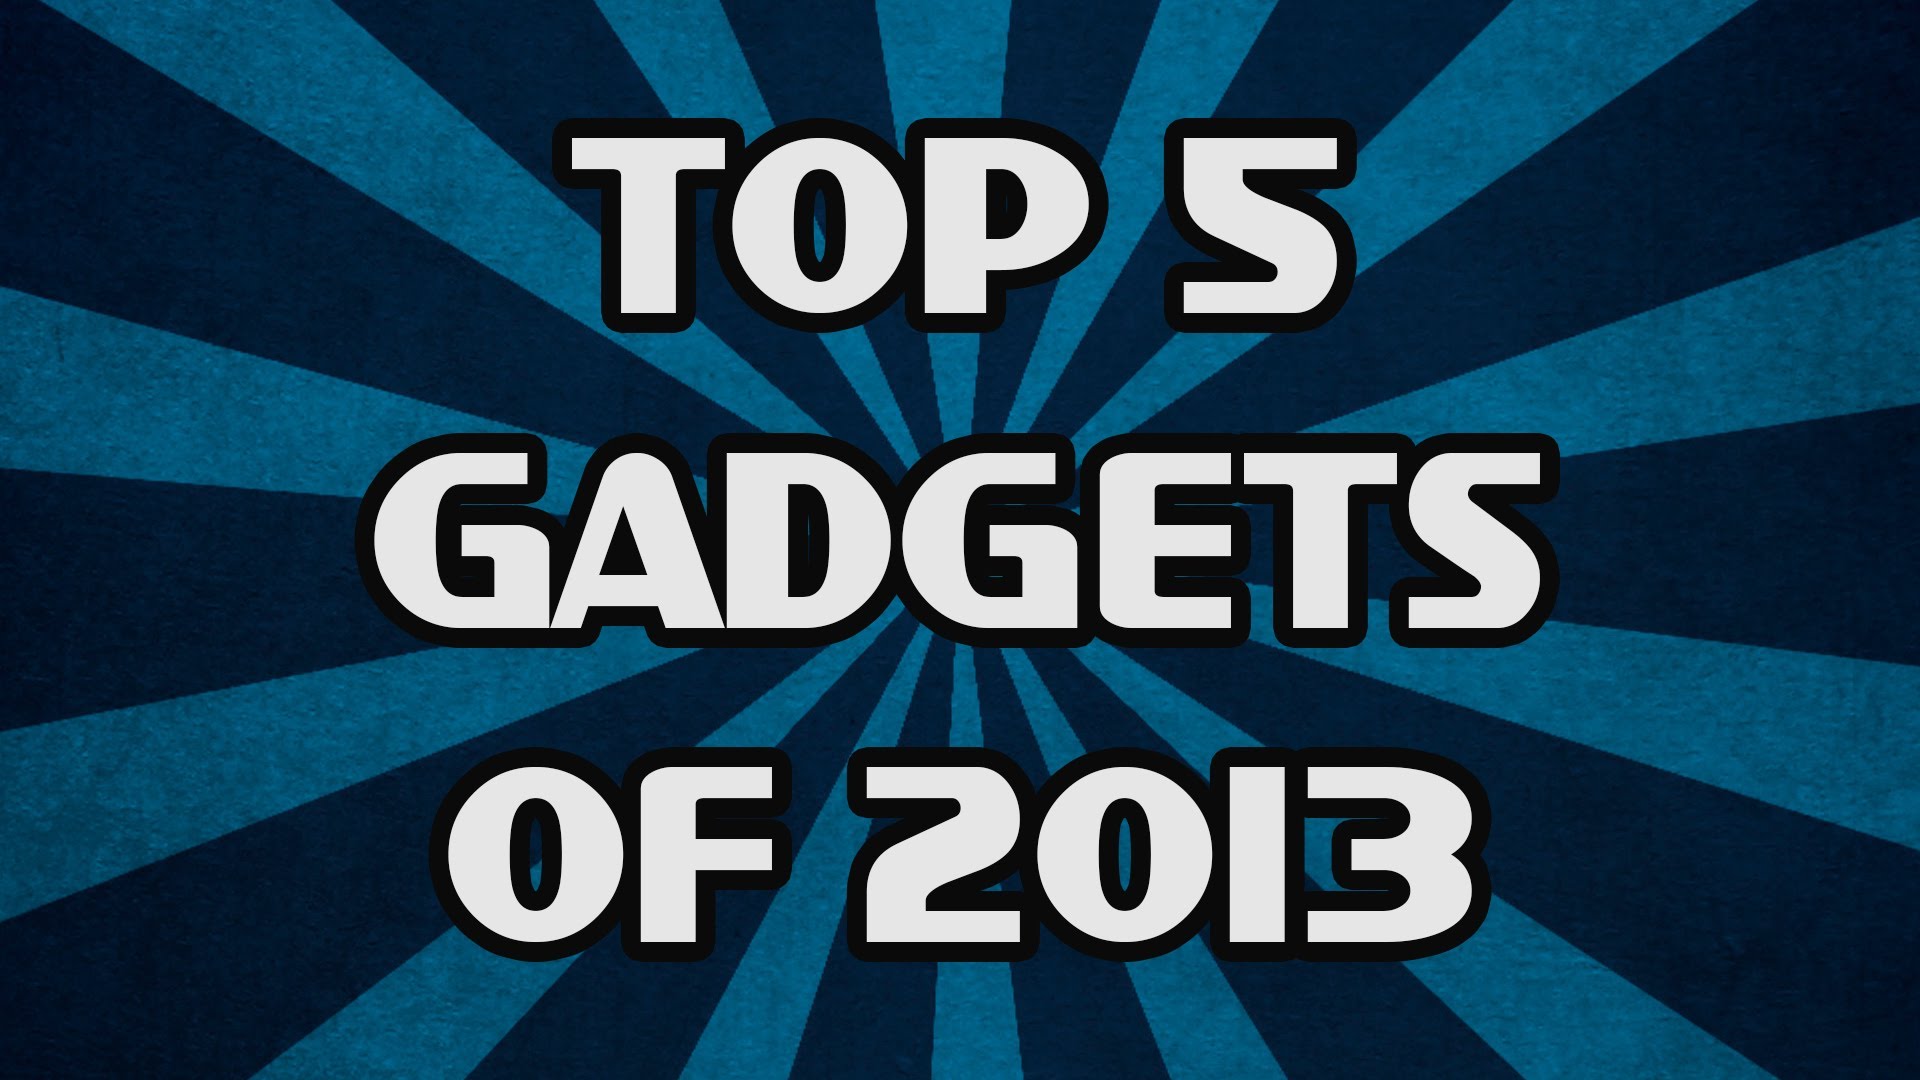 Top 5 Gadgets of 2013